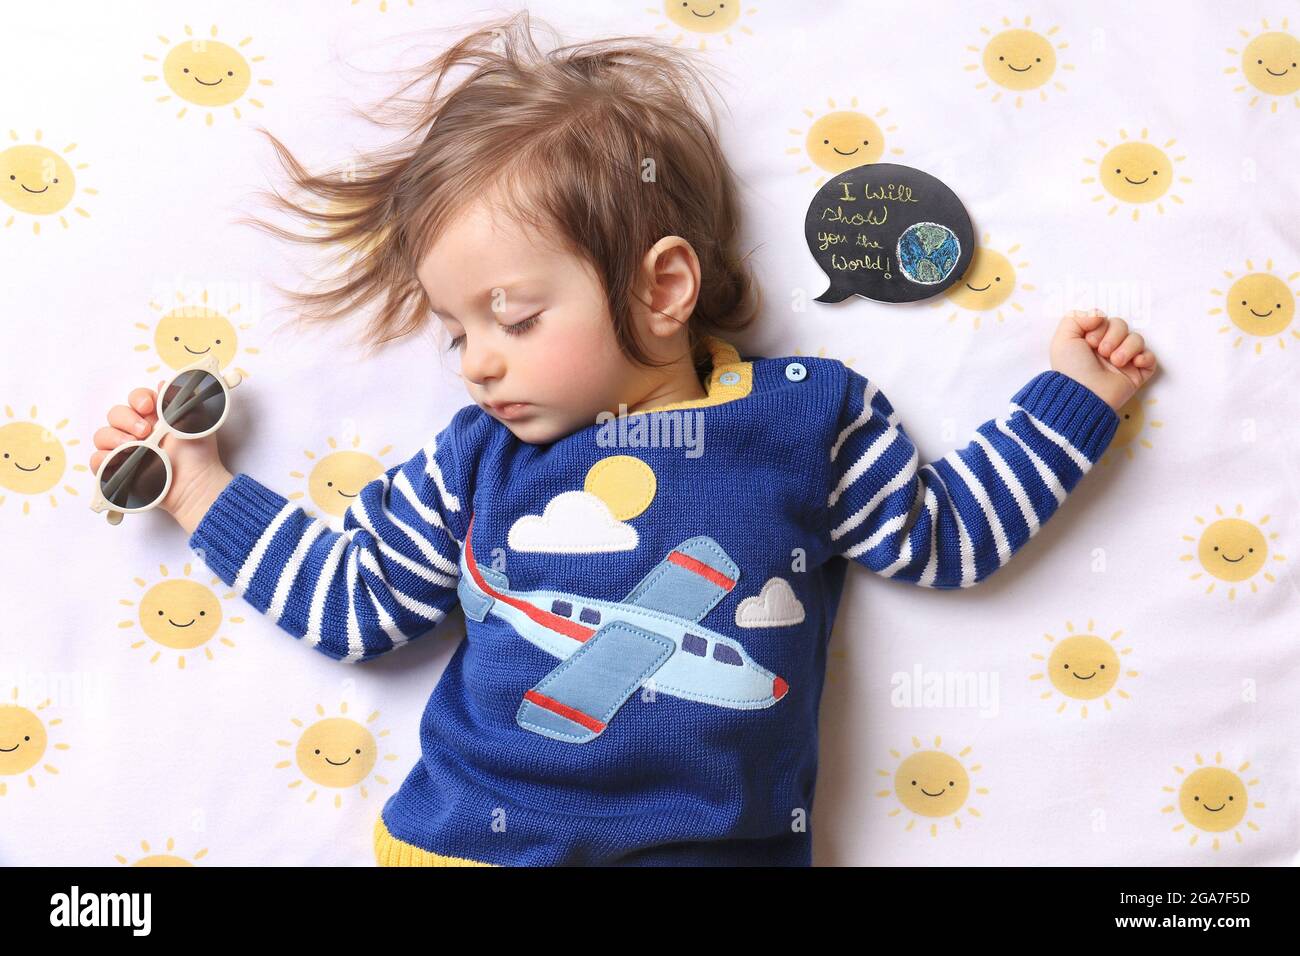 Un bébé endormi portant une chemise d'avion et tenant des lunettes de soleil rêvant de voyager, avec une bulle de parole disant que je vais vous montrer le monde. Banque D'Images